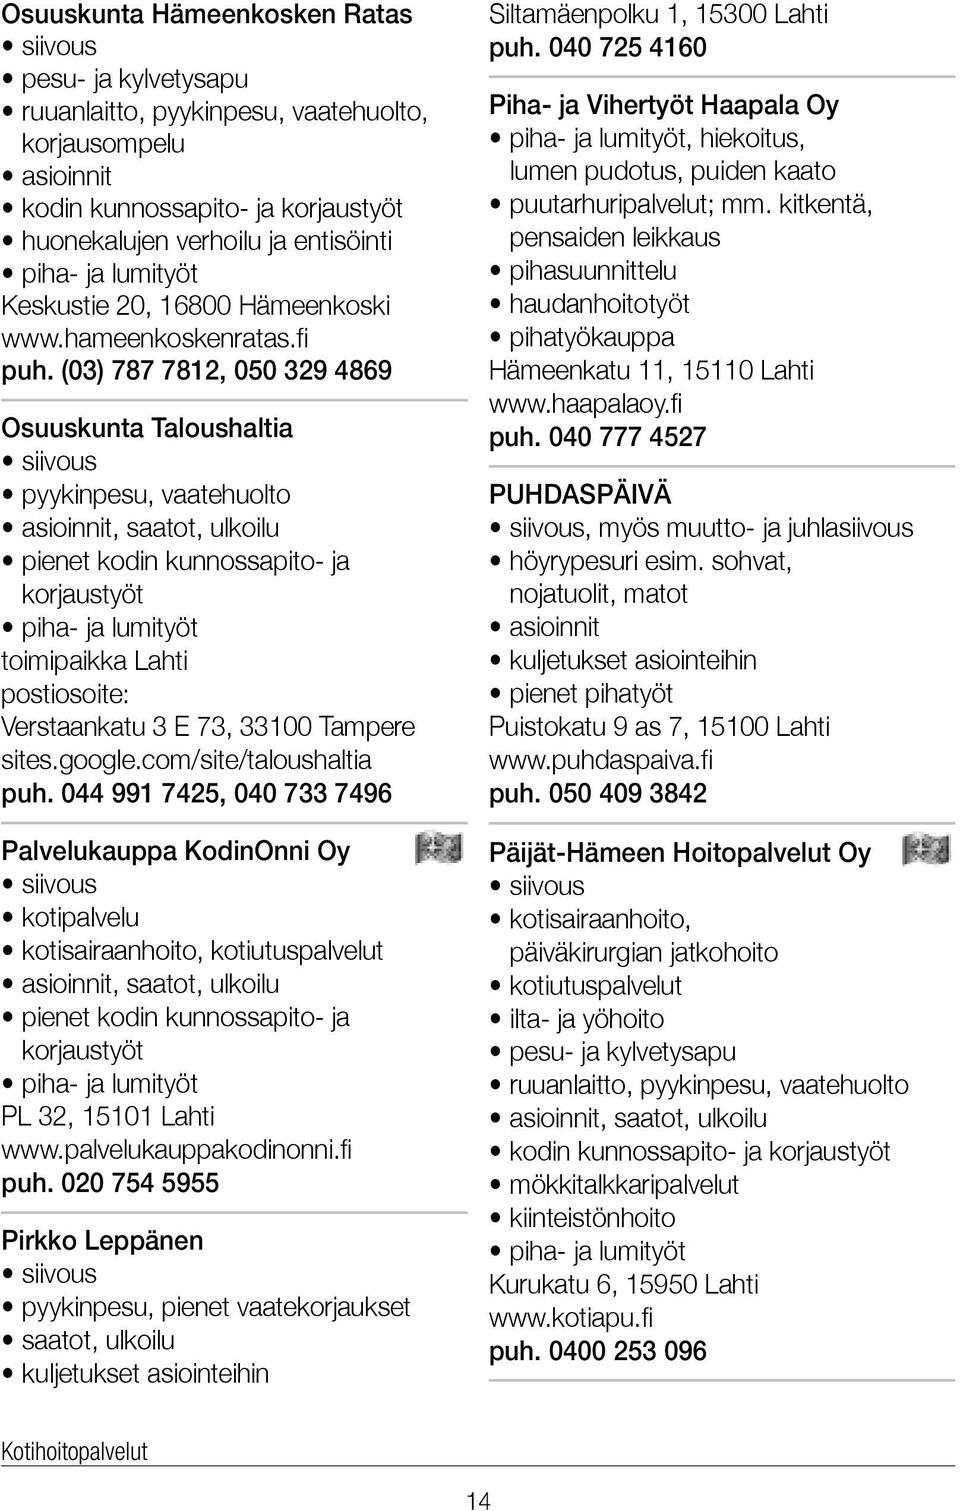 (03) 787 7812, 050 329 4869 Osuuskunta Taloushaltia pyykinpesu, vaatehuolto pienet kodin kunnossapito- ja korjaustyöt piha- ja lumityöt toimipaikka Lahti postiosoite: Verstaankatu 3 E 73, 33100